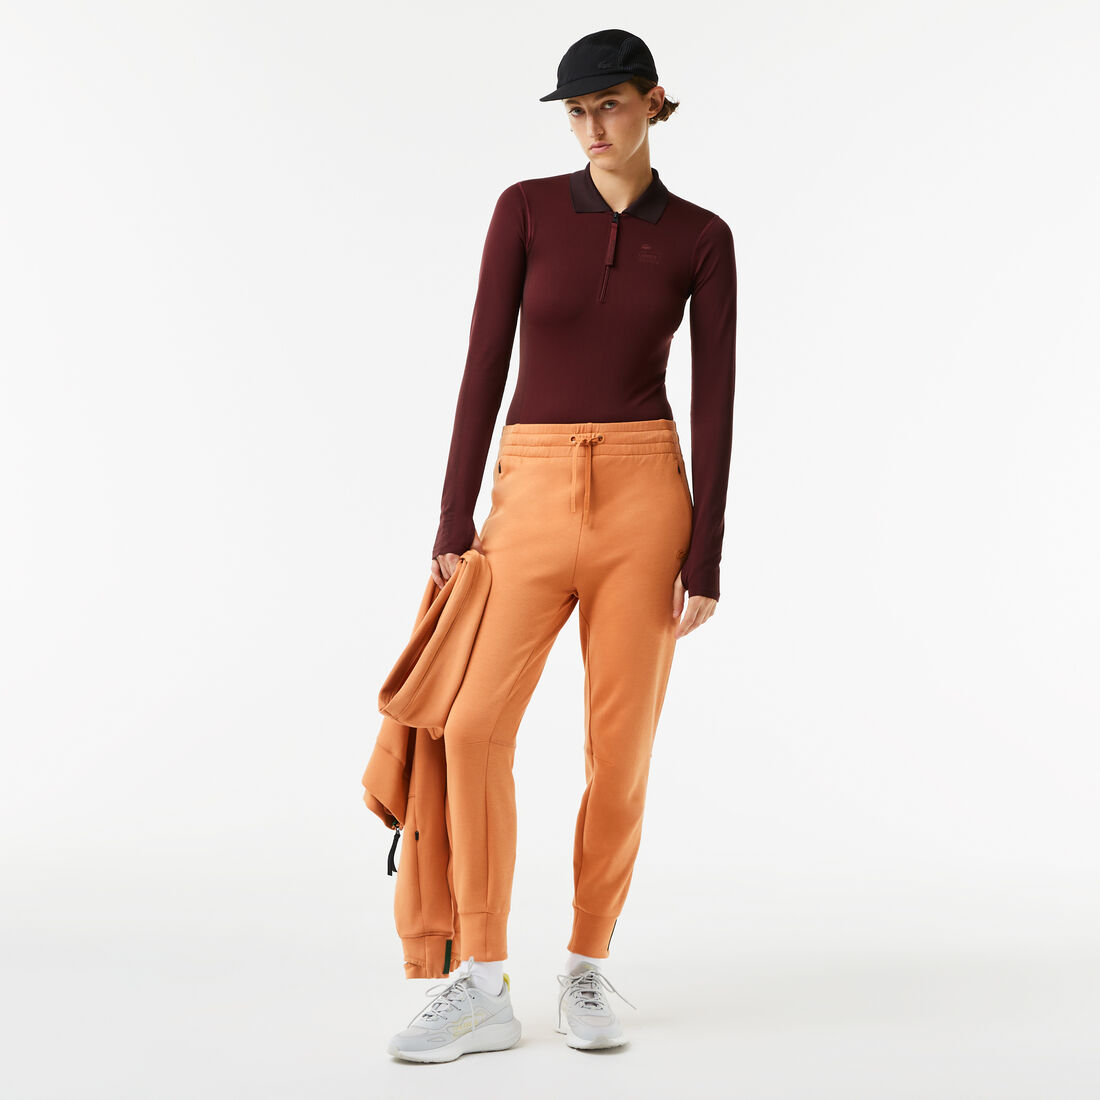 Lacoste Zip Collar Bodysuit Polo Shirts Damen Bordeaux | HYSC-98467